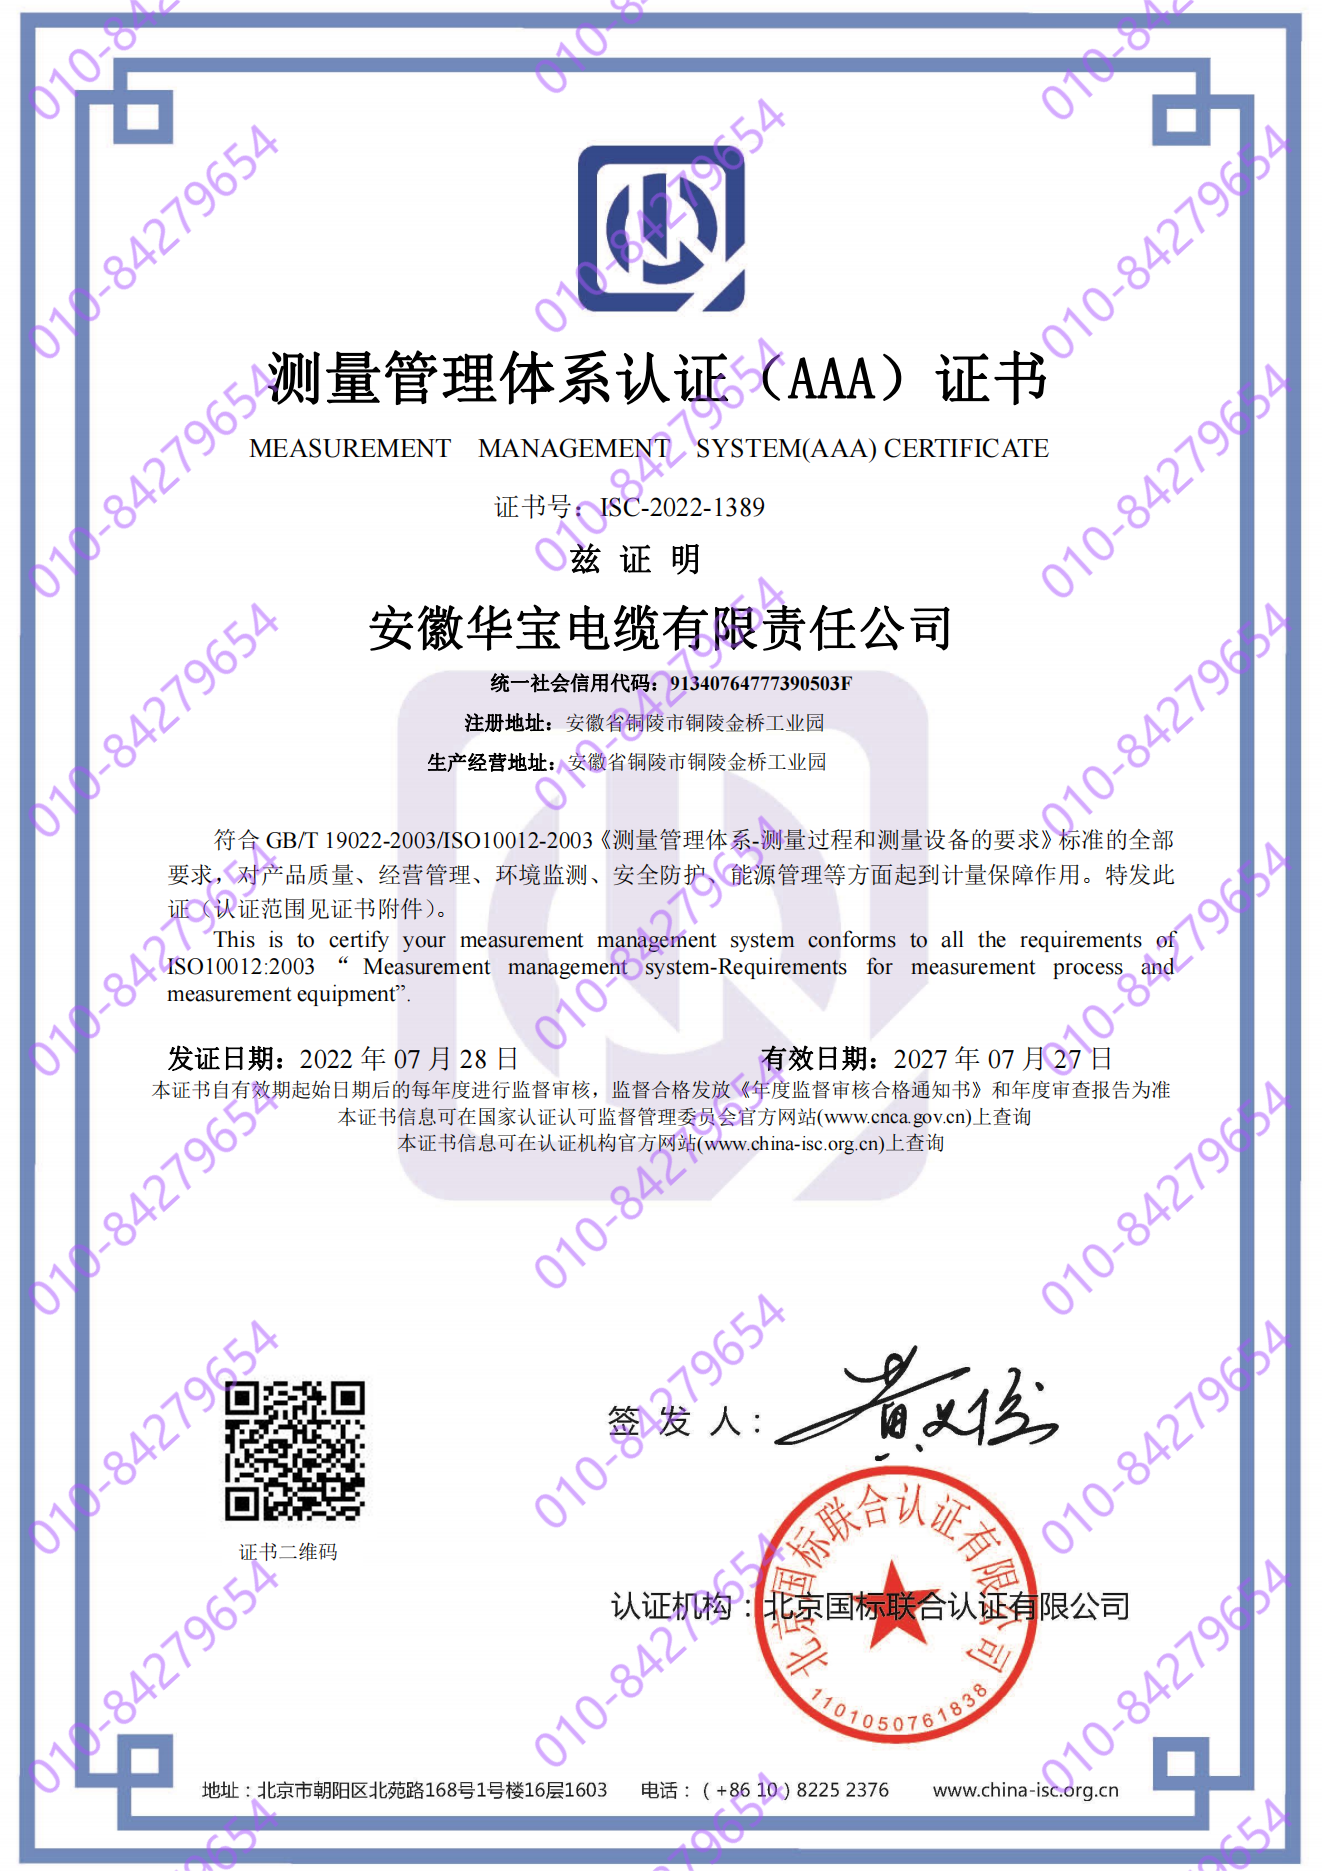 安徽华宝电缆有限责任公司  喜获“测量管理体系认证（AAA）证书”